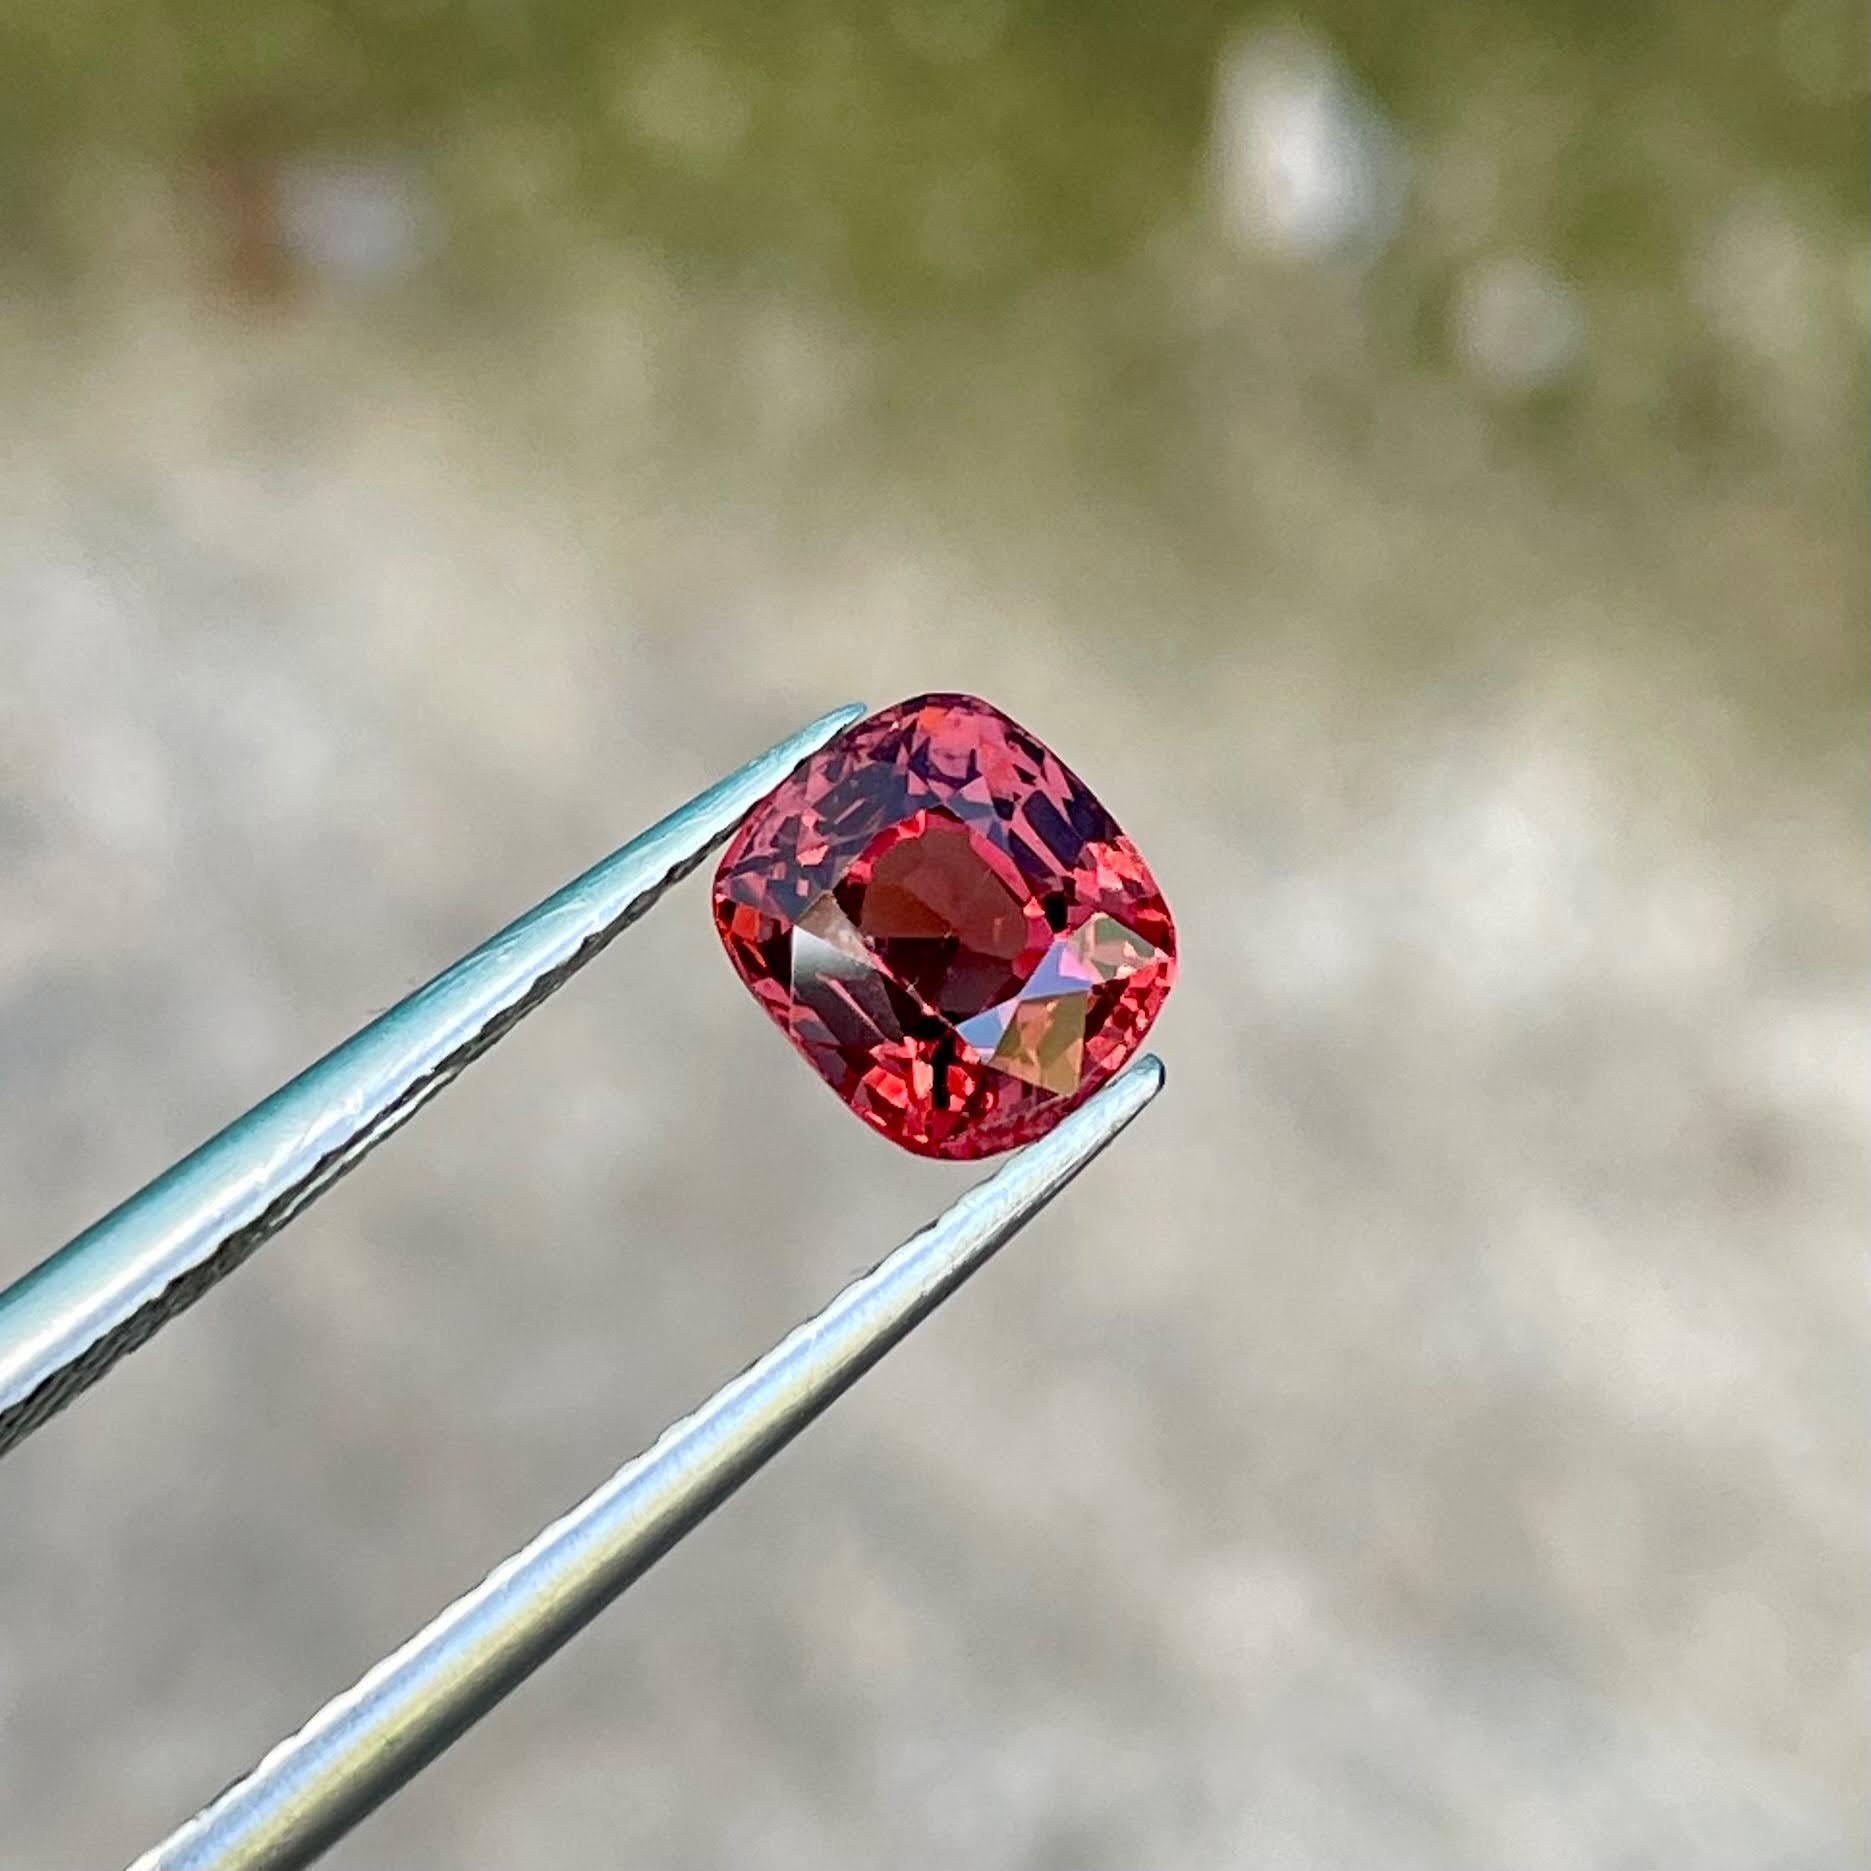 Poids 1,15 carats 
Dimensions 6.12x5.45x4.05 mm
Traitement aucun 
Origine Birmanie 
Clarté VVS
Coussin de coupe 




Découvrez l'allure captivante de cette exquise pierre spinelle birmane rouge orangée de 1,15 carat. Avec sa teinte envoûtante